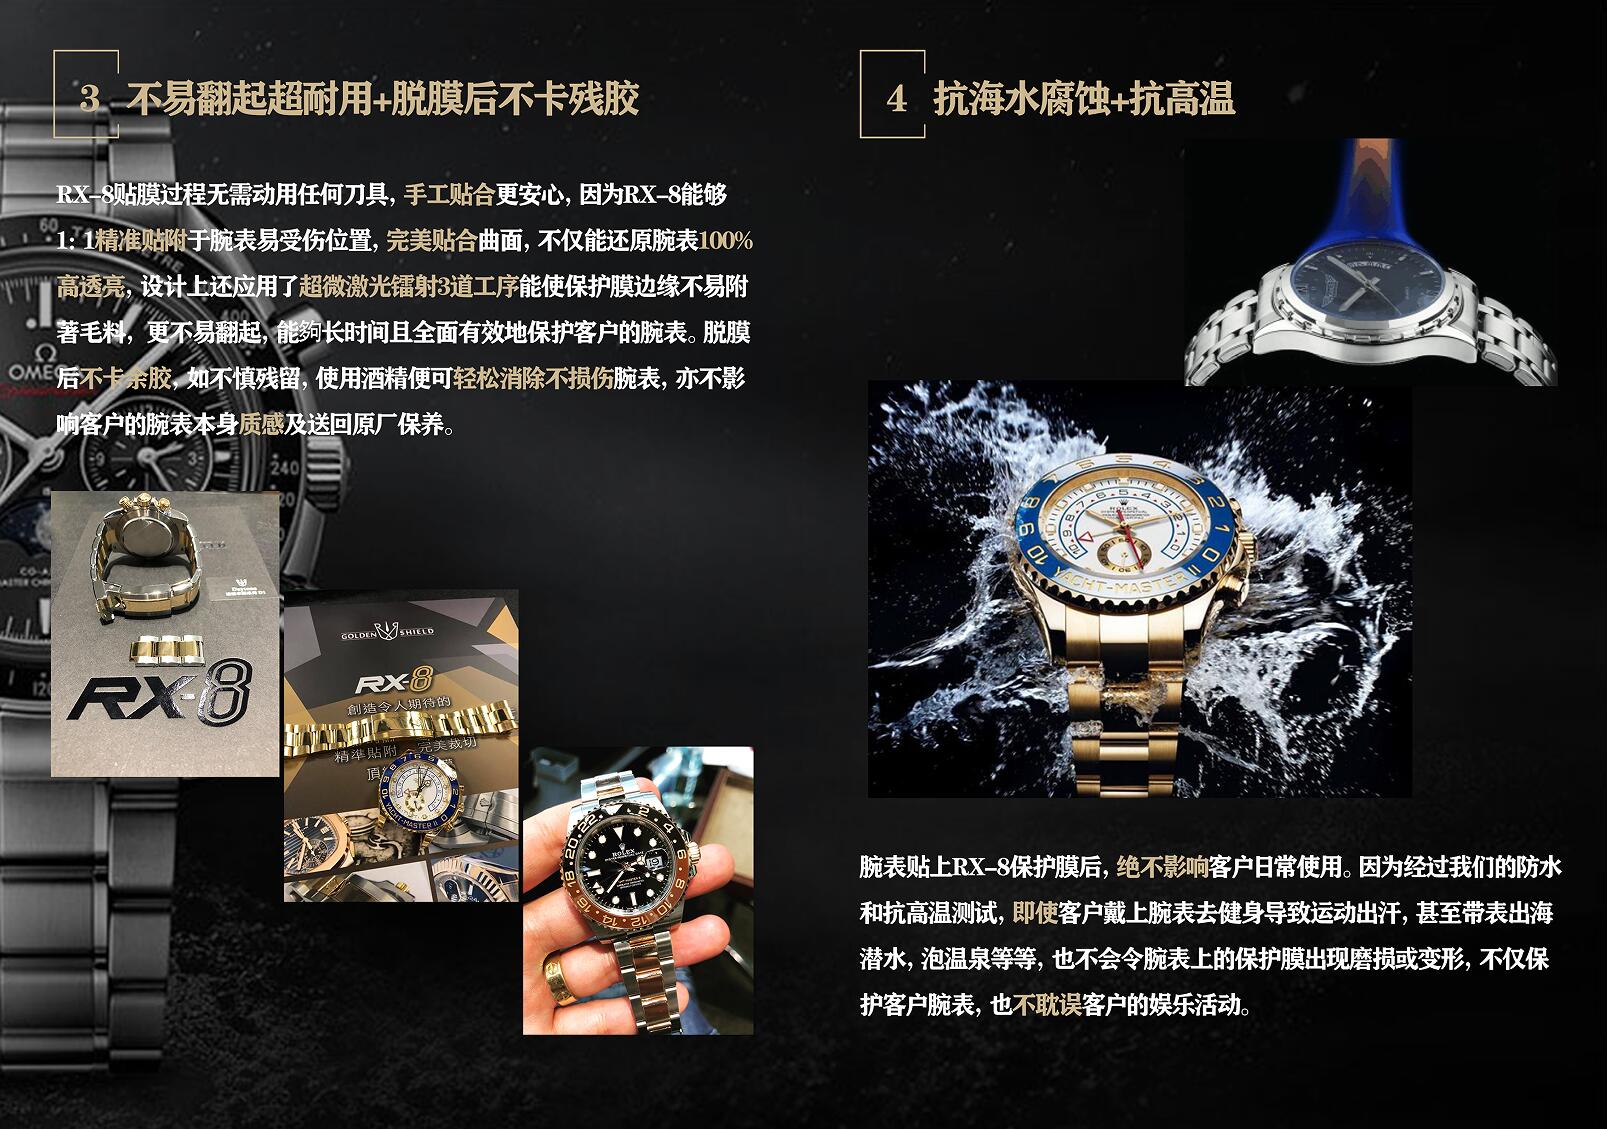 RX-8手表贴膜适用于百达翡丽PP5980/1AR(链带款) 外表圈表盘表扣